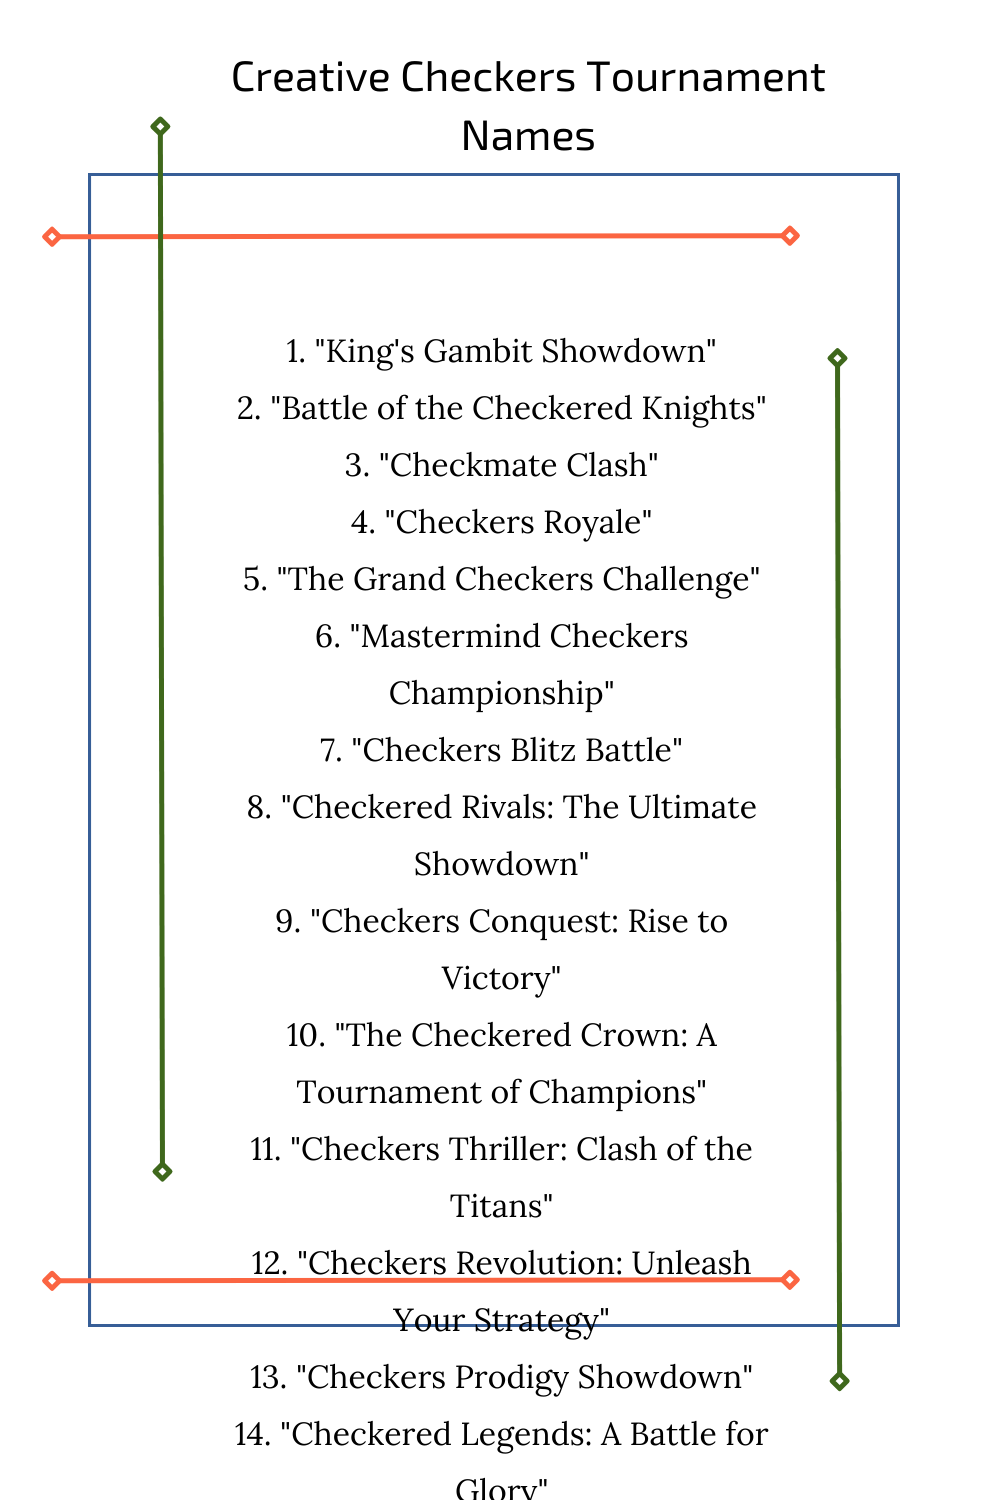 Creative Checkers Tournament Names